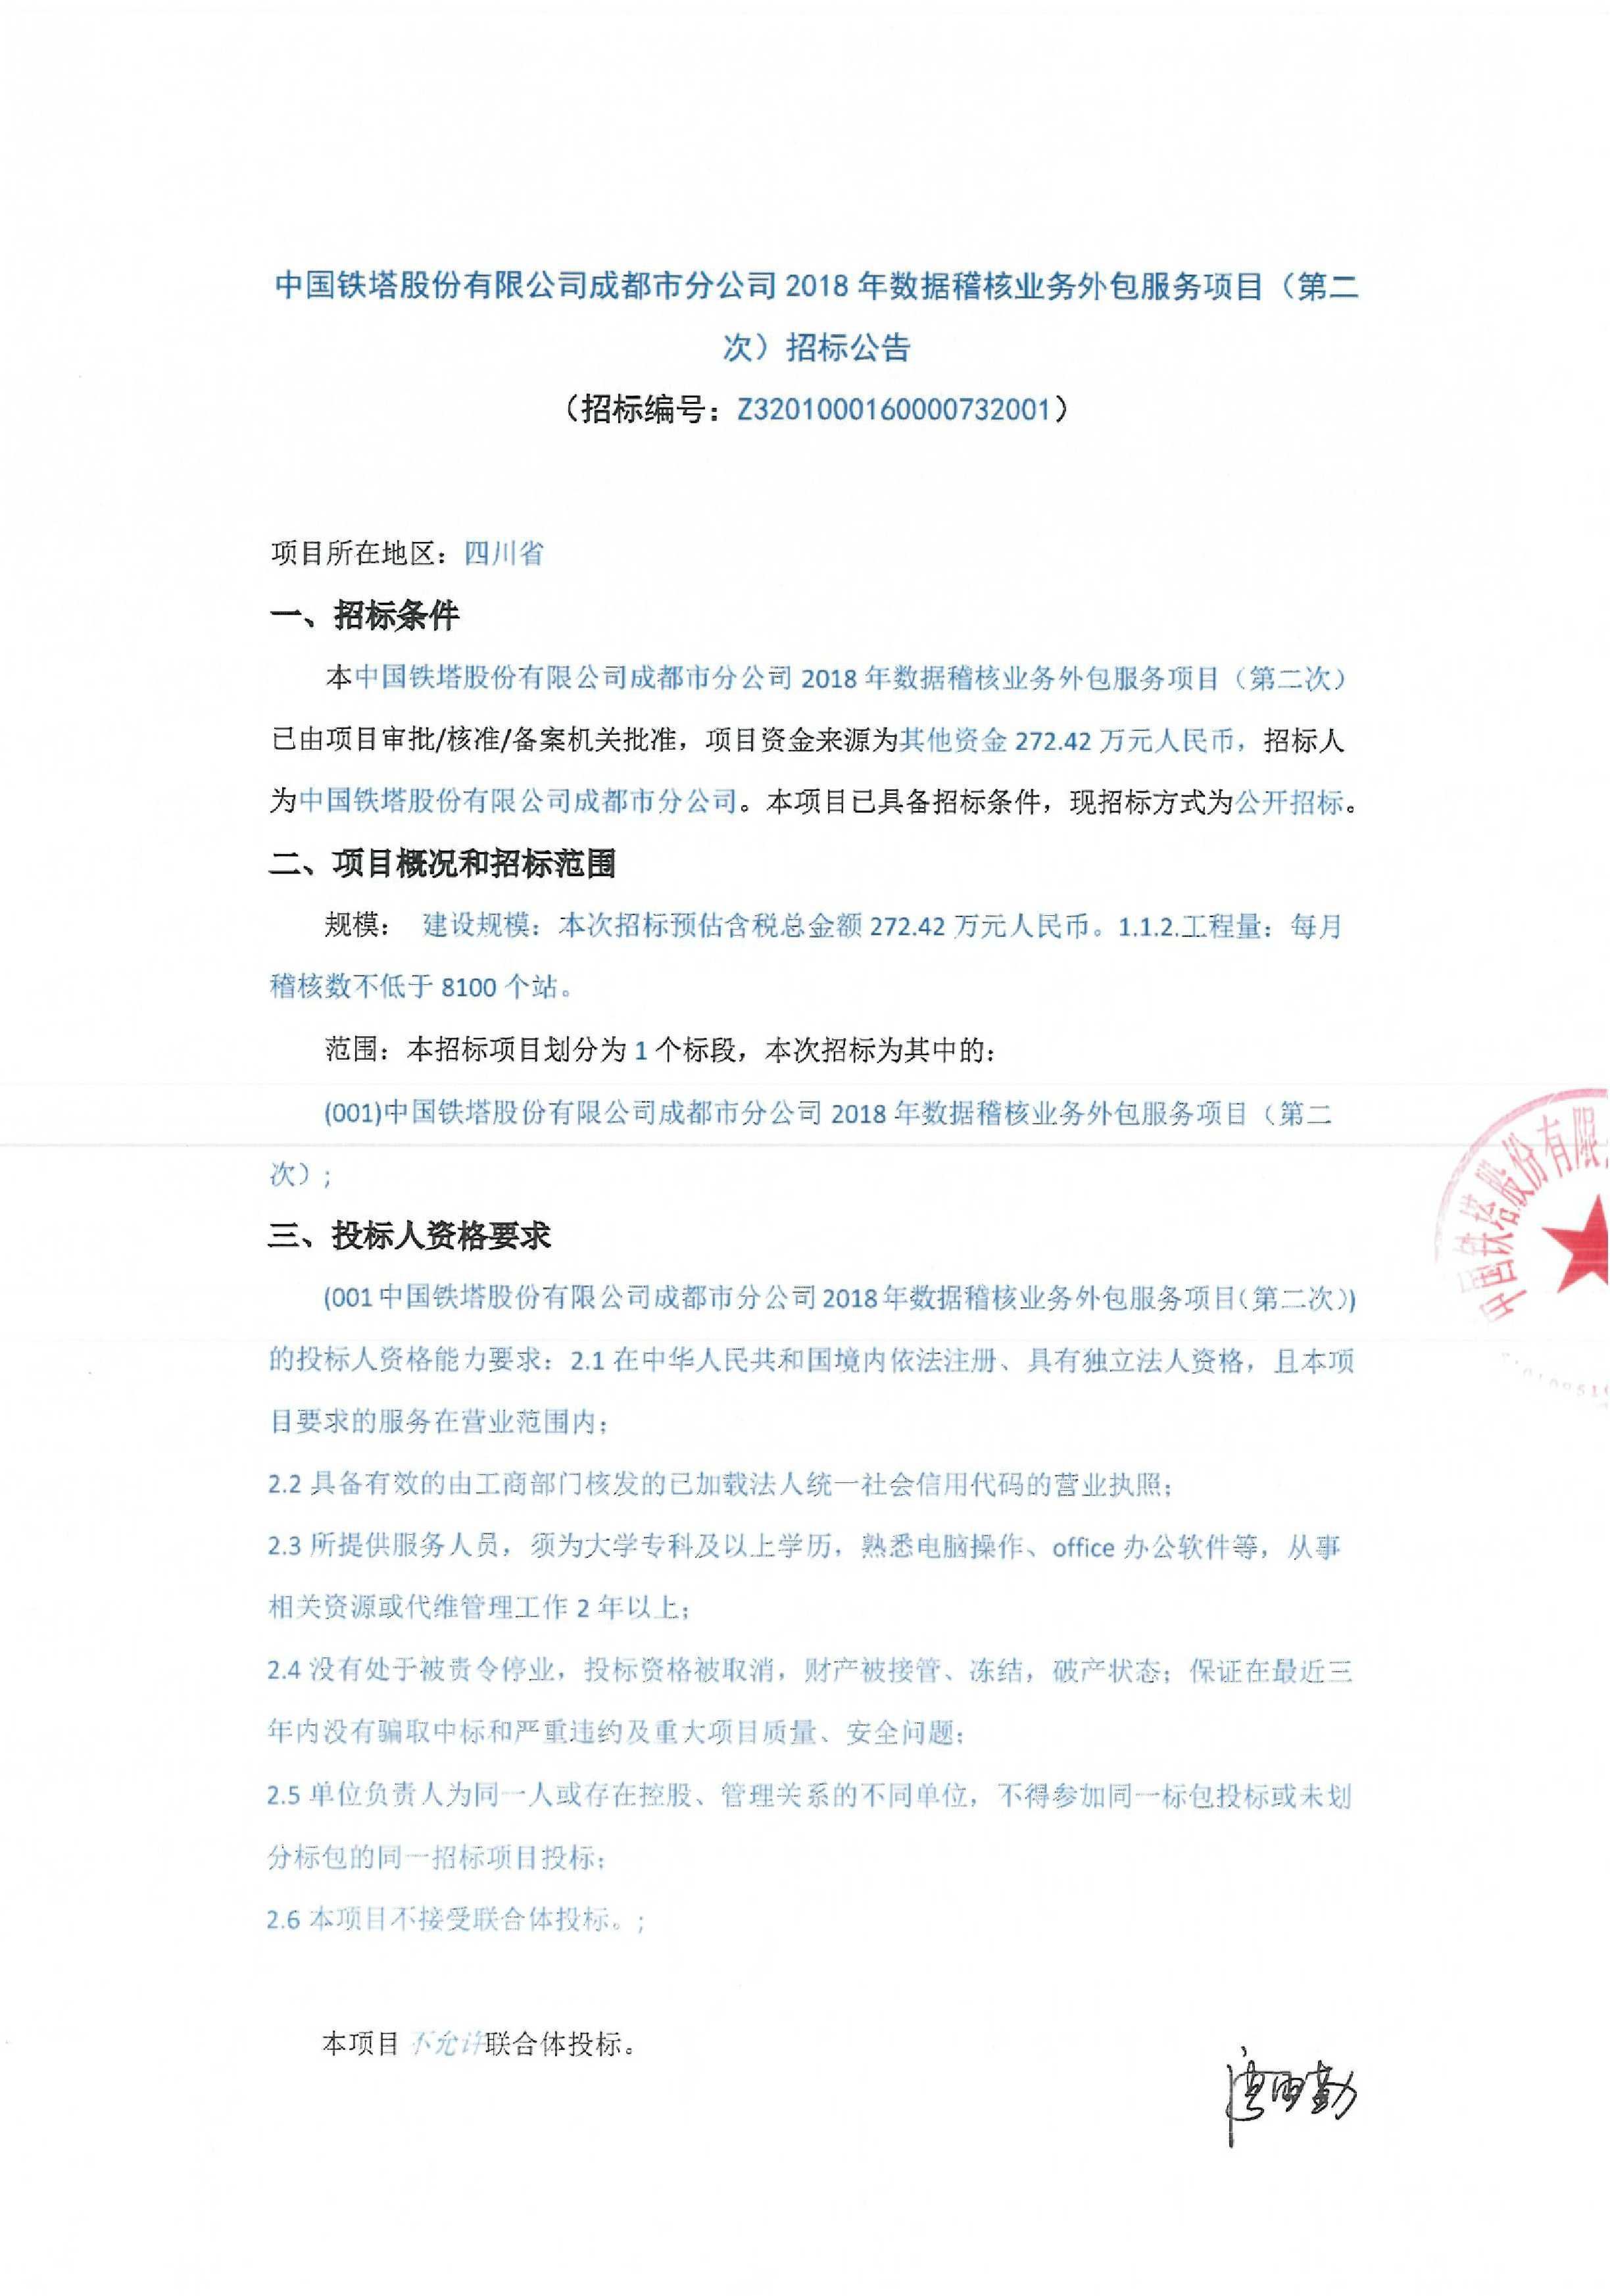 中国铁塔股份有限公司成都市分公司2018年数据稽核业务外包服务项目(第二次)招标公告